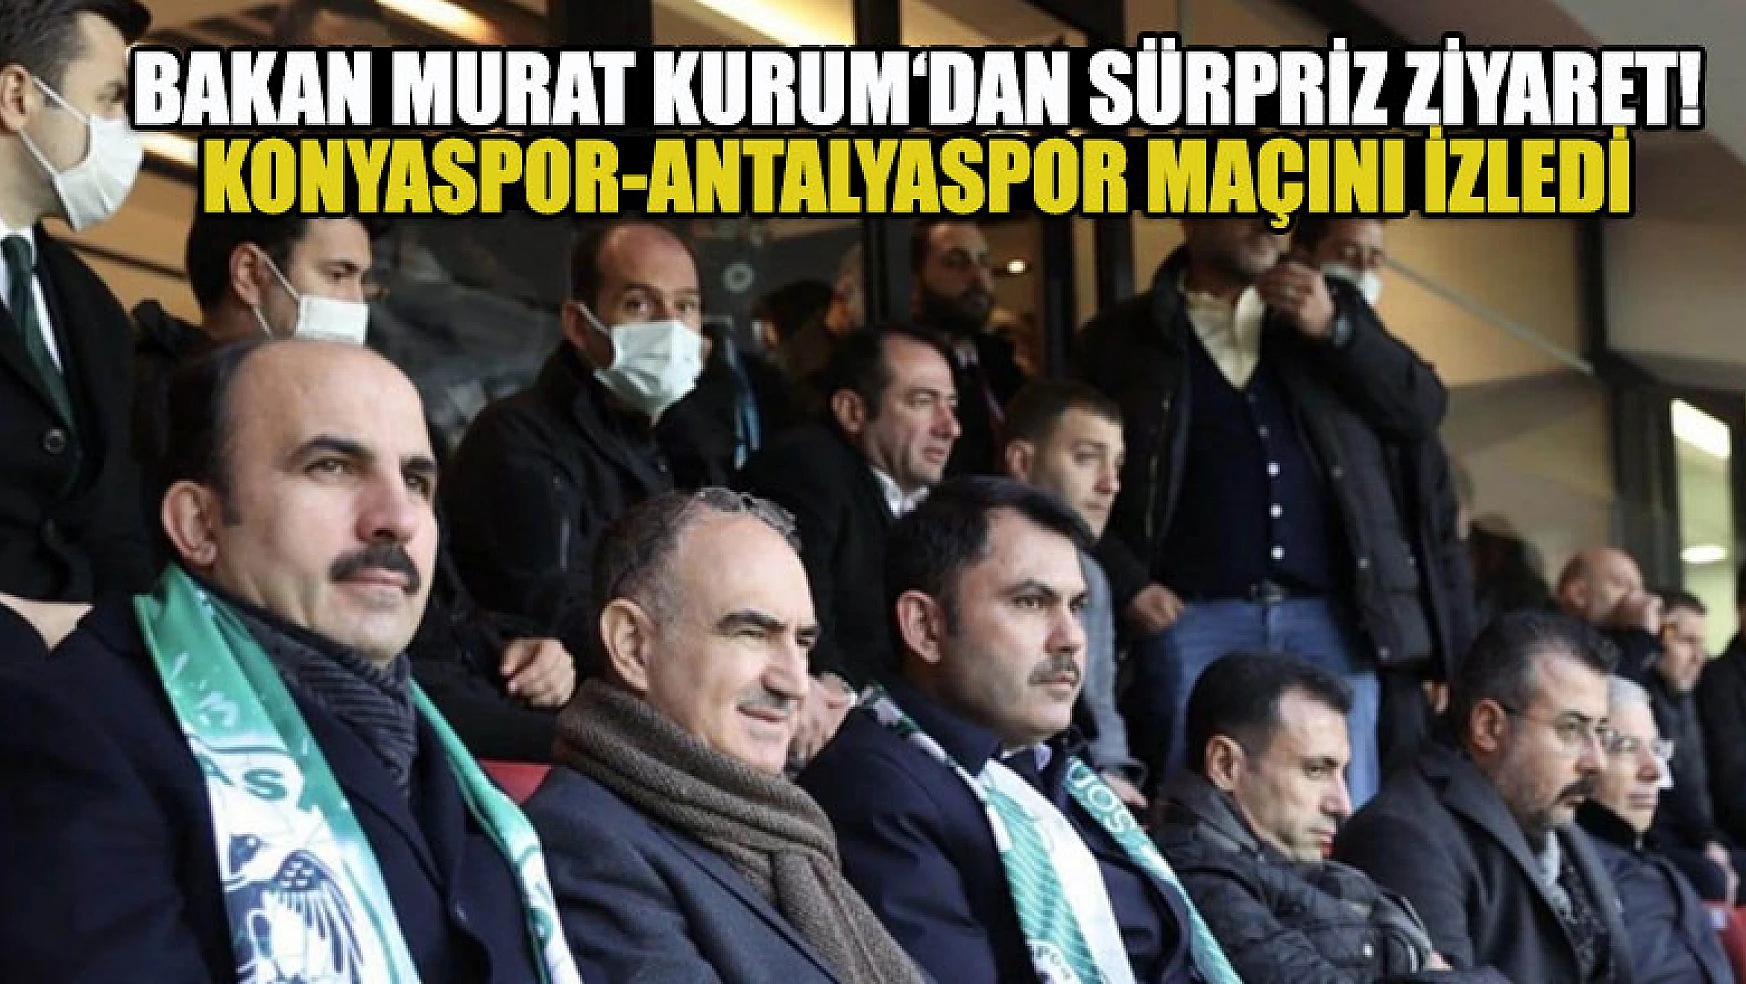 Bakan Murat Kurum Konyaspor-Antalyaspor maçını izledi